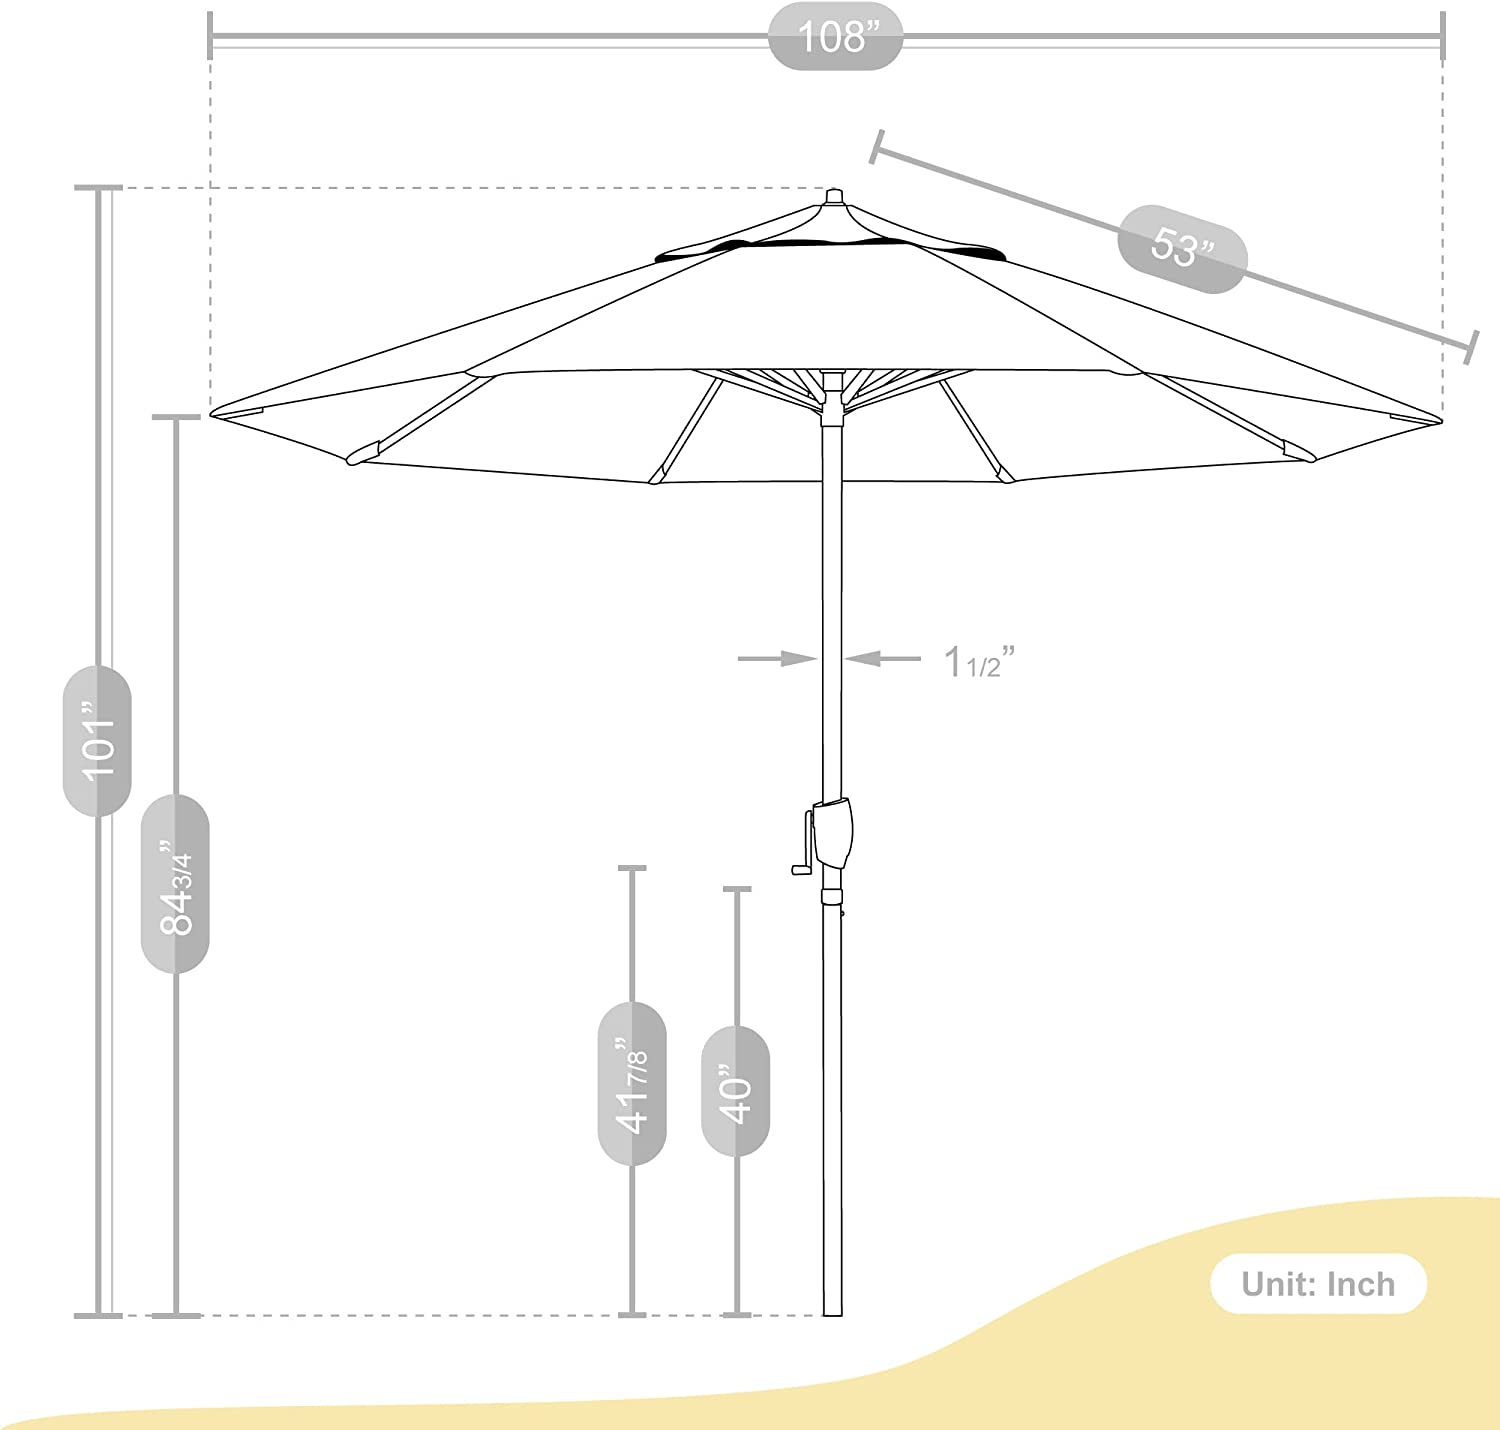 California Umbrella 9 ft. Auto Tilt Crank Lift Patio Umbrella, Macaw Sunbrella - $200